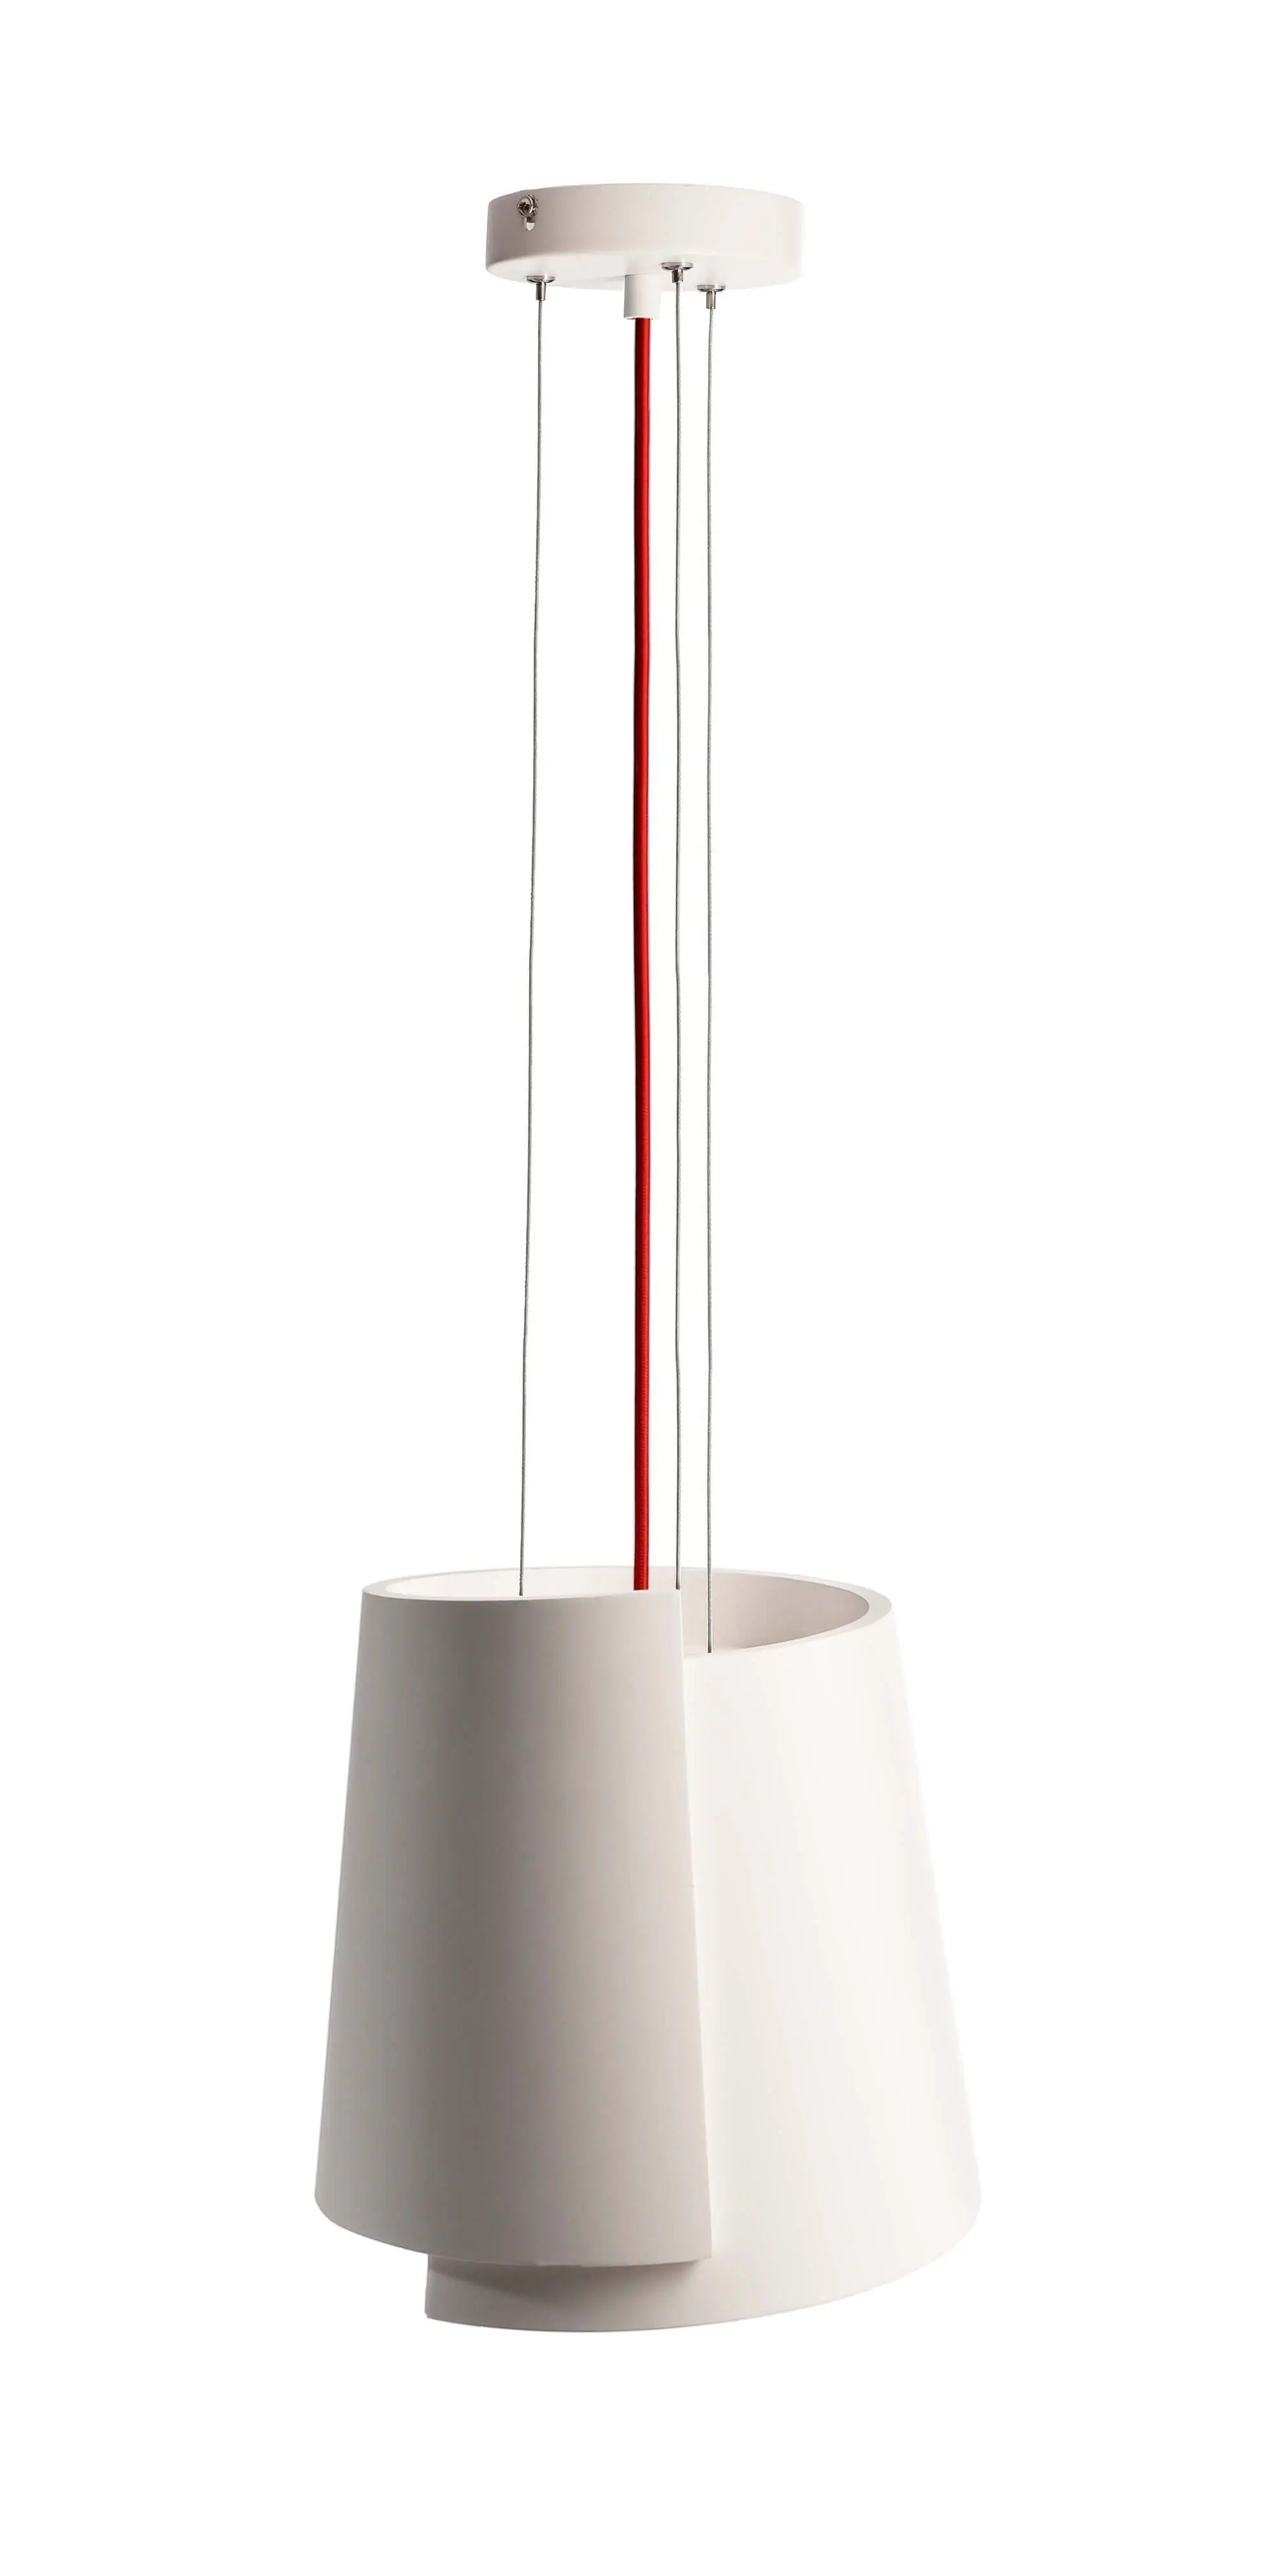 Hängeleuchte Twister II aus Gips, weiß, rotes Kabel, Ø 28cm